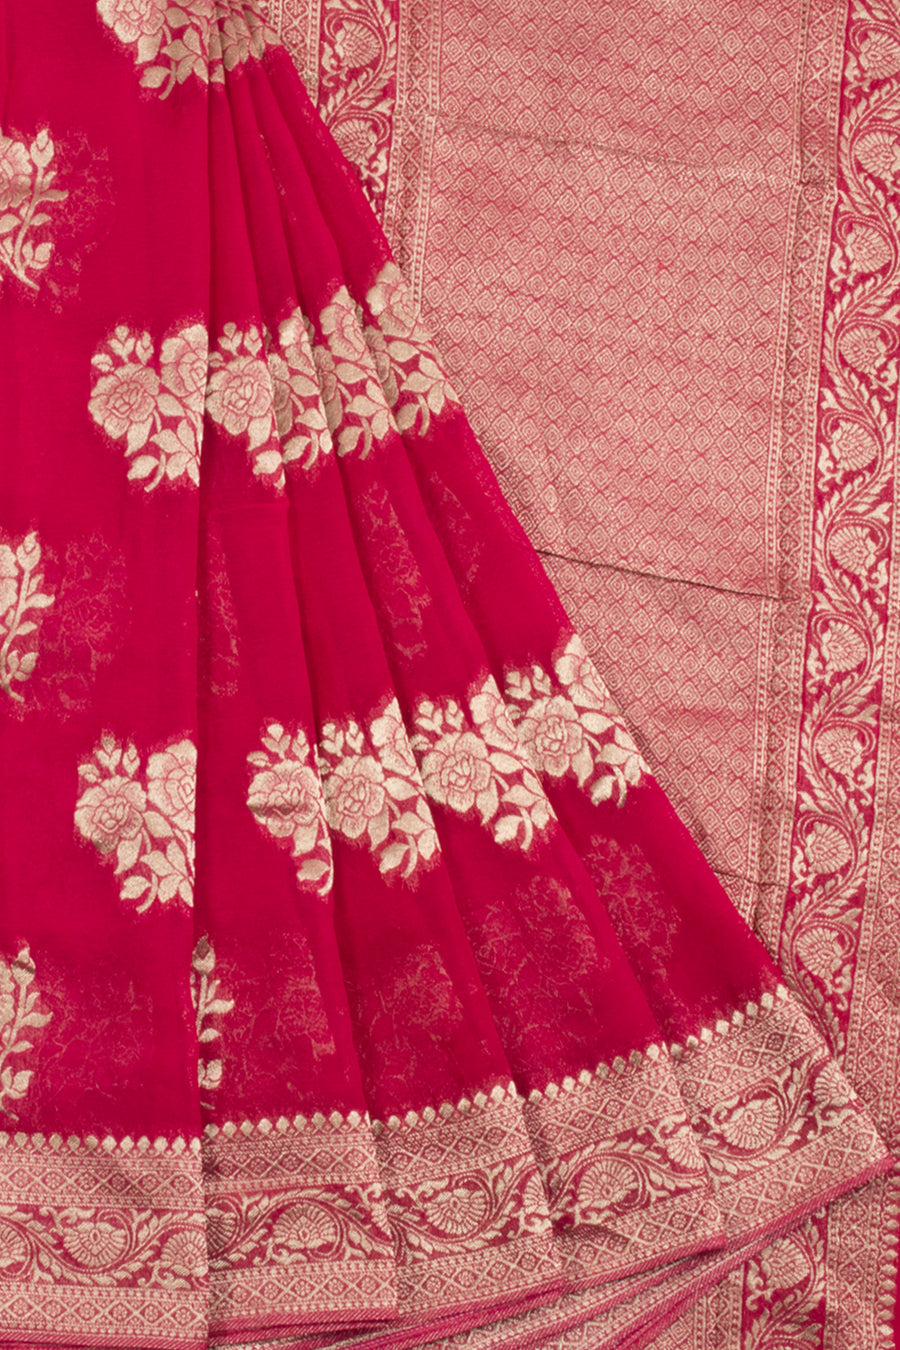 Handloom Banarasi katrua chiffon Saree with Floral Motifs and Pallu